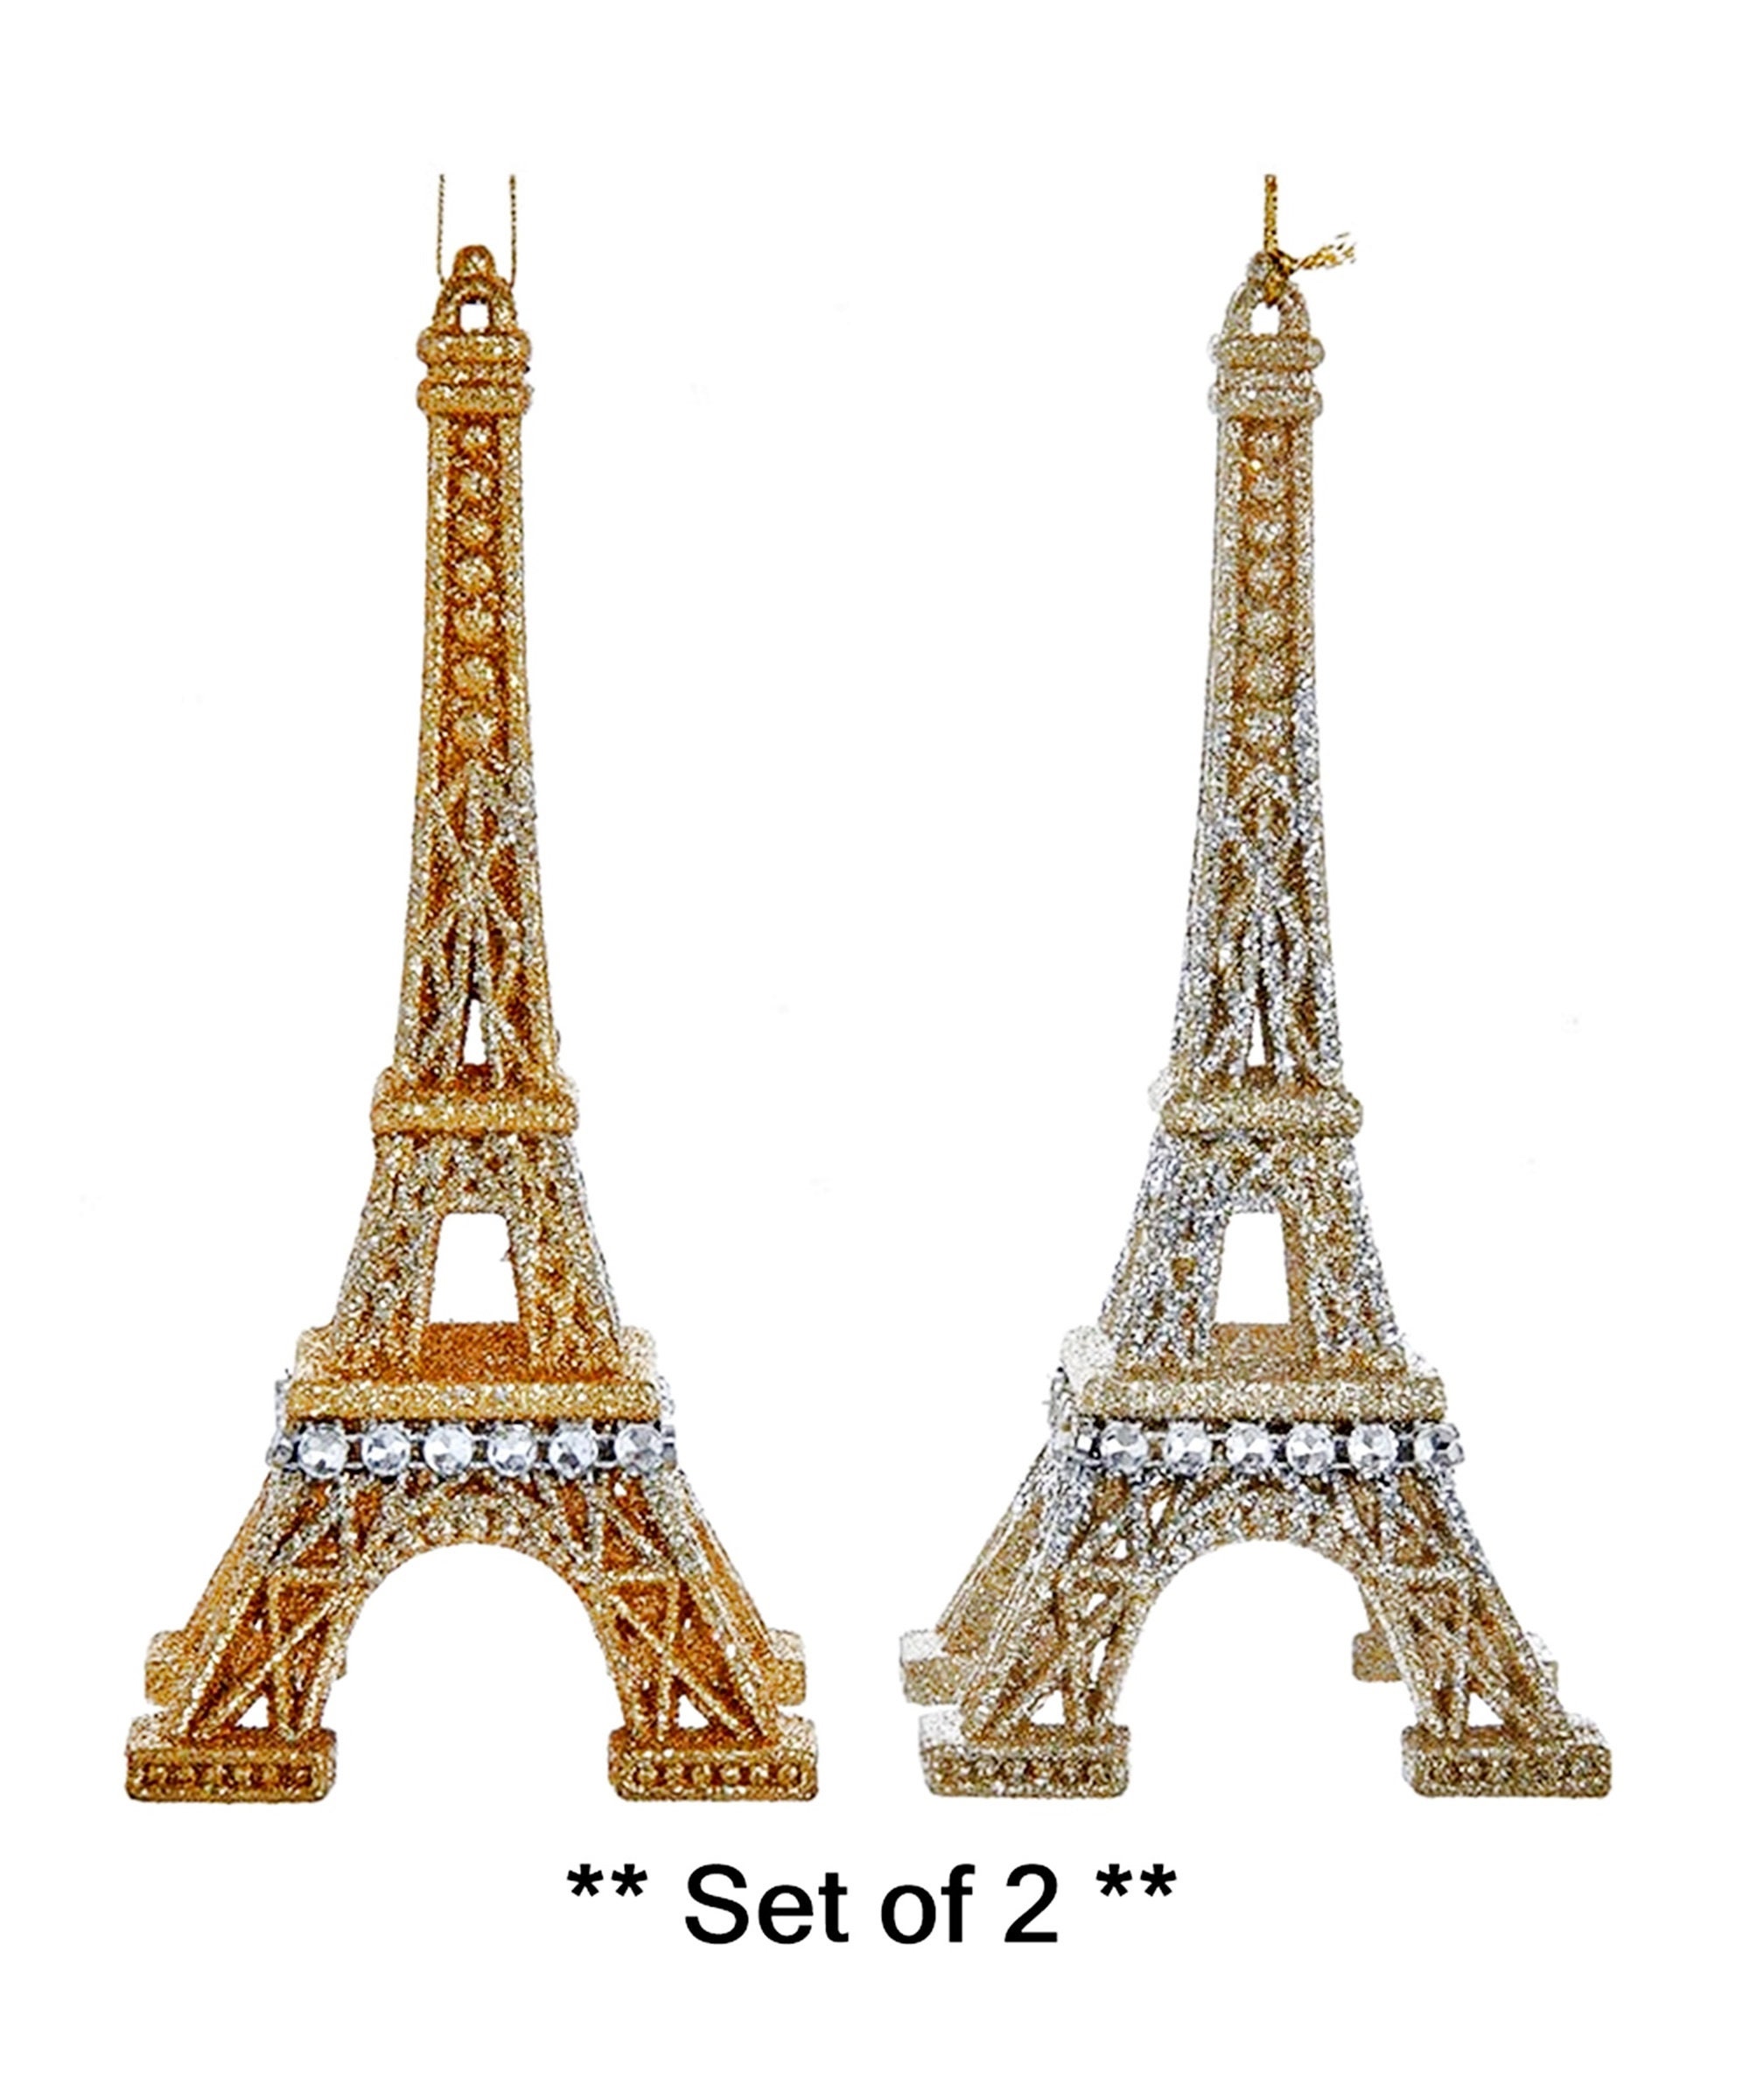 Paris Theme Party Decor Eiffel Tower Centerpiece